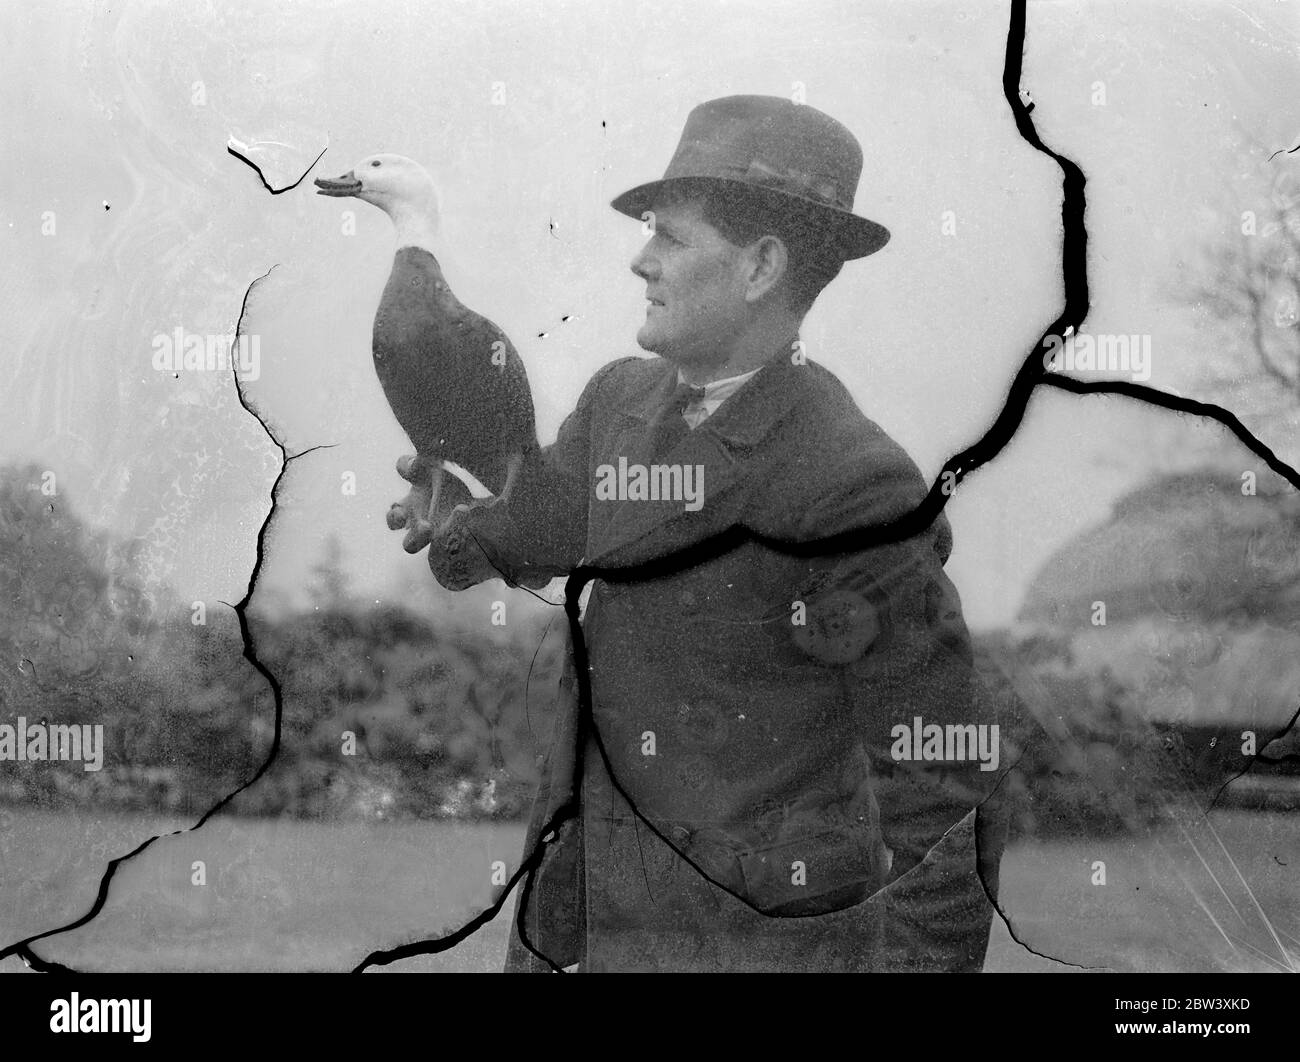 Homme oiseau de Kew . Gardien de 100 oiseaux , y compris des crancs , des oies , des canards et d'autres espèces de toutes les parties du monde , M. J Claiden est l' ' homme d'oiseau ' des jardins de Kew . Il connaît tous les oiseaux par leur nom , mais son préféré est Barbara , une OIE du Paradis de Nouvelle-Zélande , qui le suit partout dans les Jardins . Photos , homme d'oiseau de Kew ' s , M. J Claiden , avec Barbara , son animal de compagnie Paradise Goose . 31 mars 1937 Banque D'Images